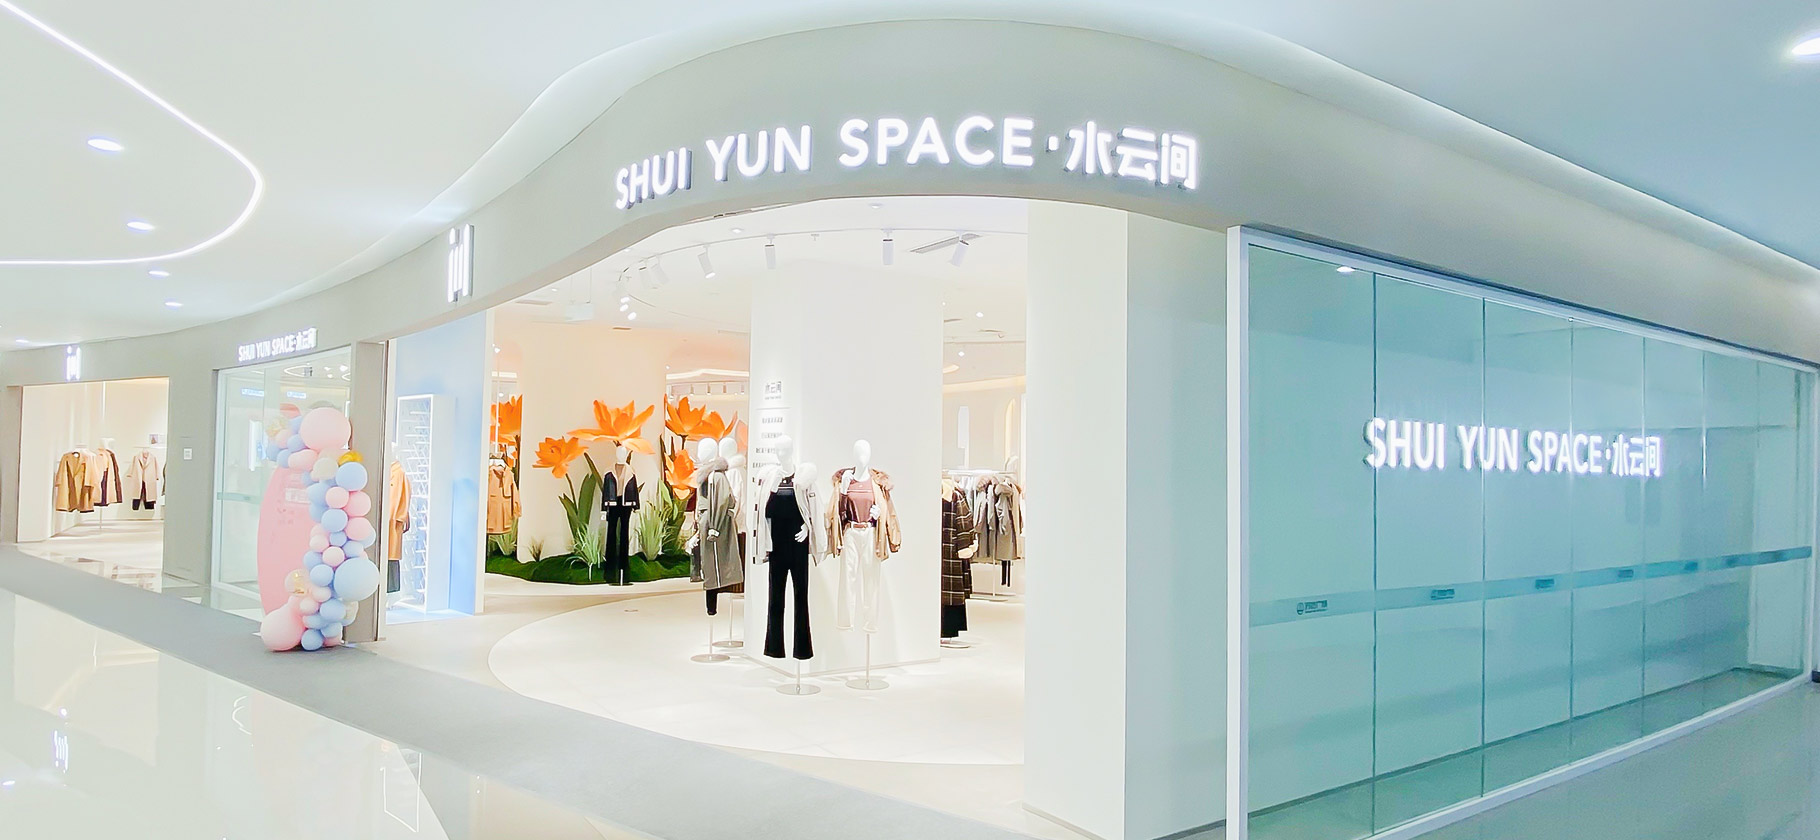 水云间-SHUI YUN SPACE集合店已发展了零售终端店铺超过600间